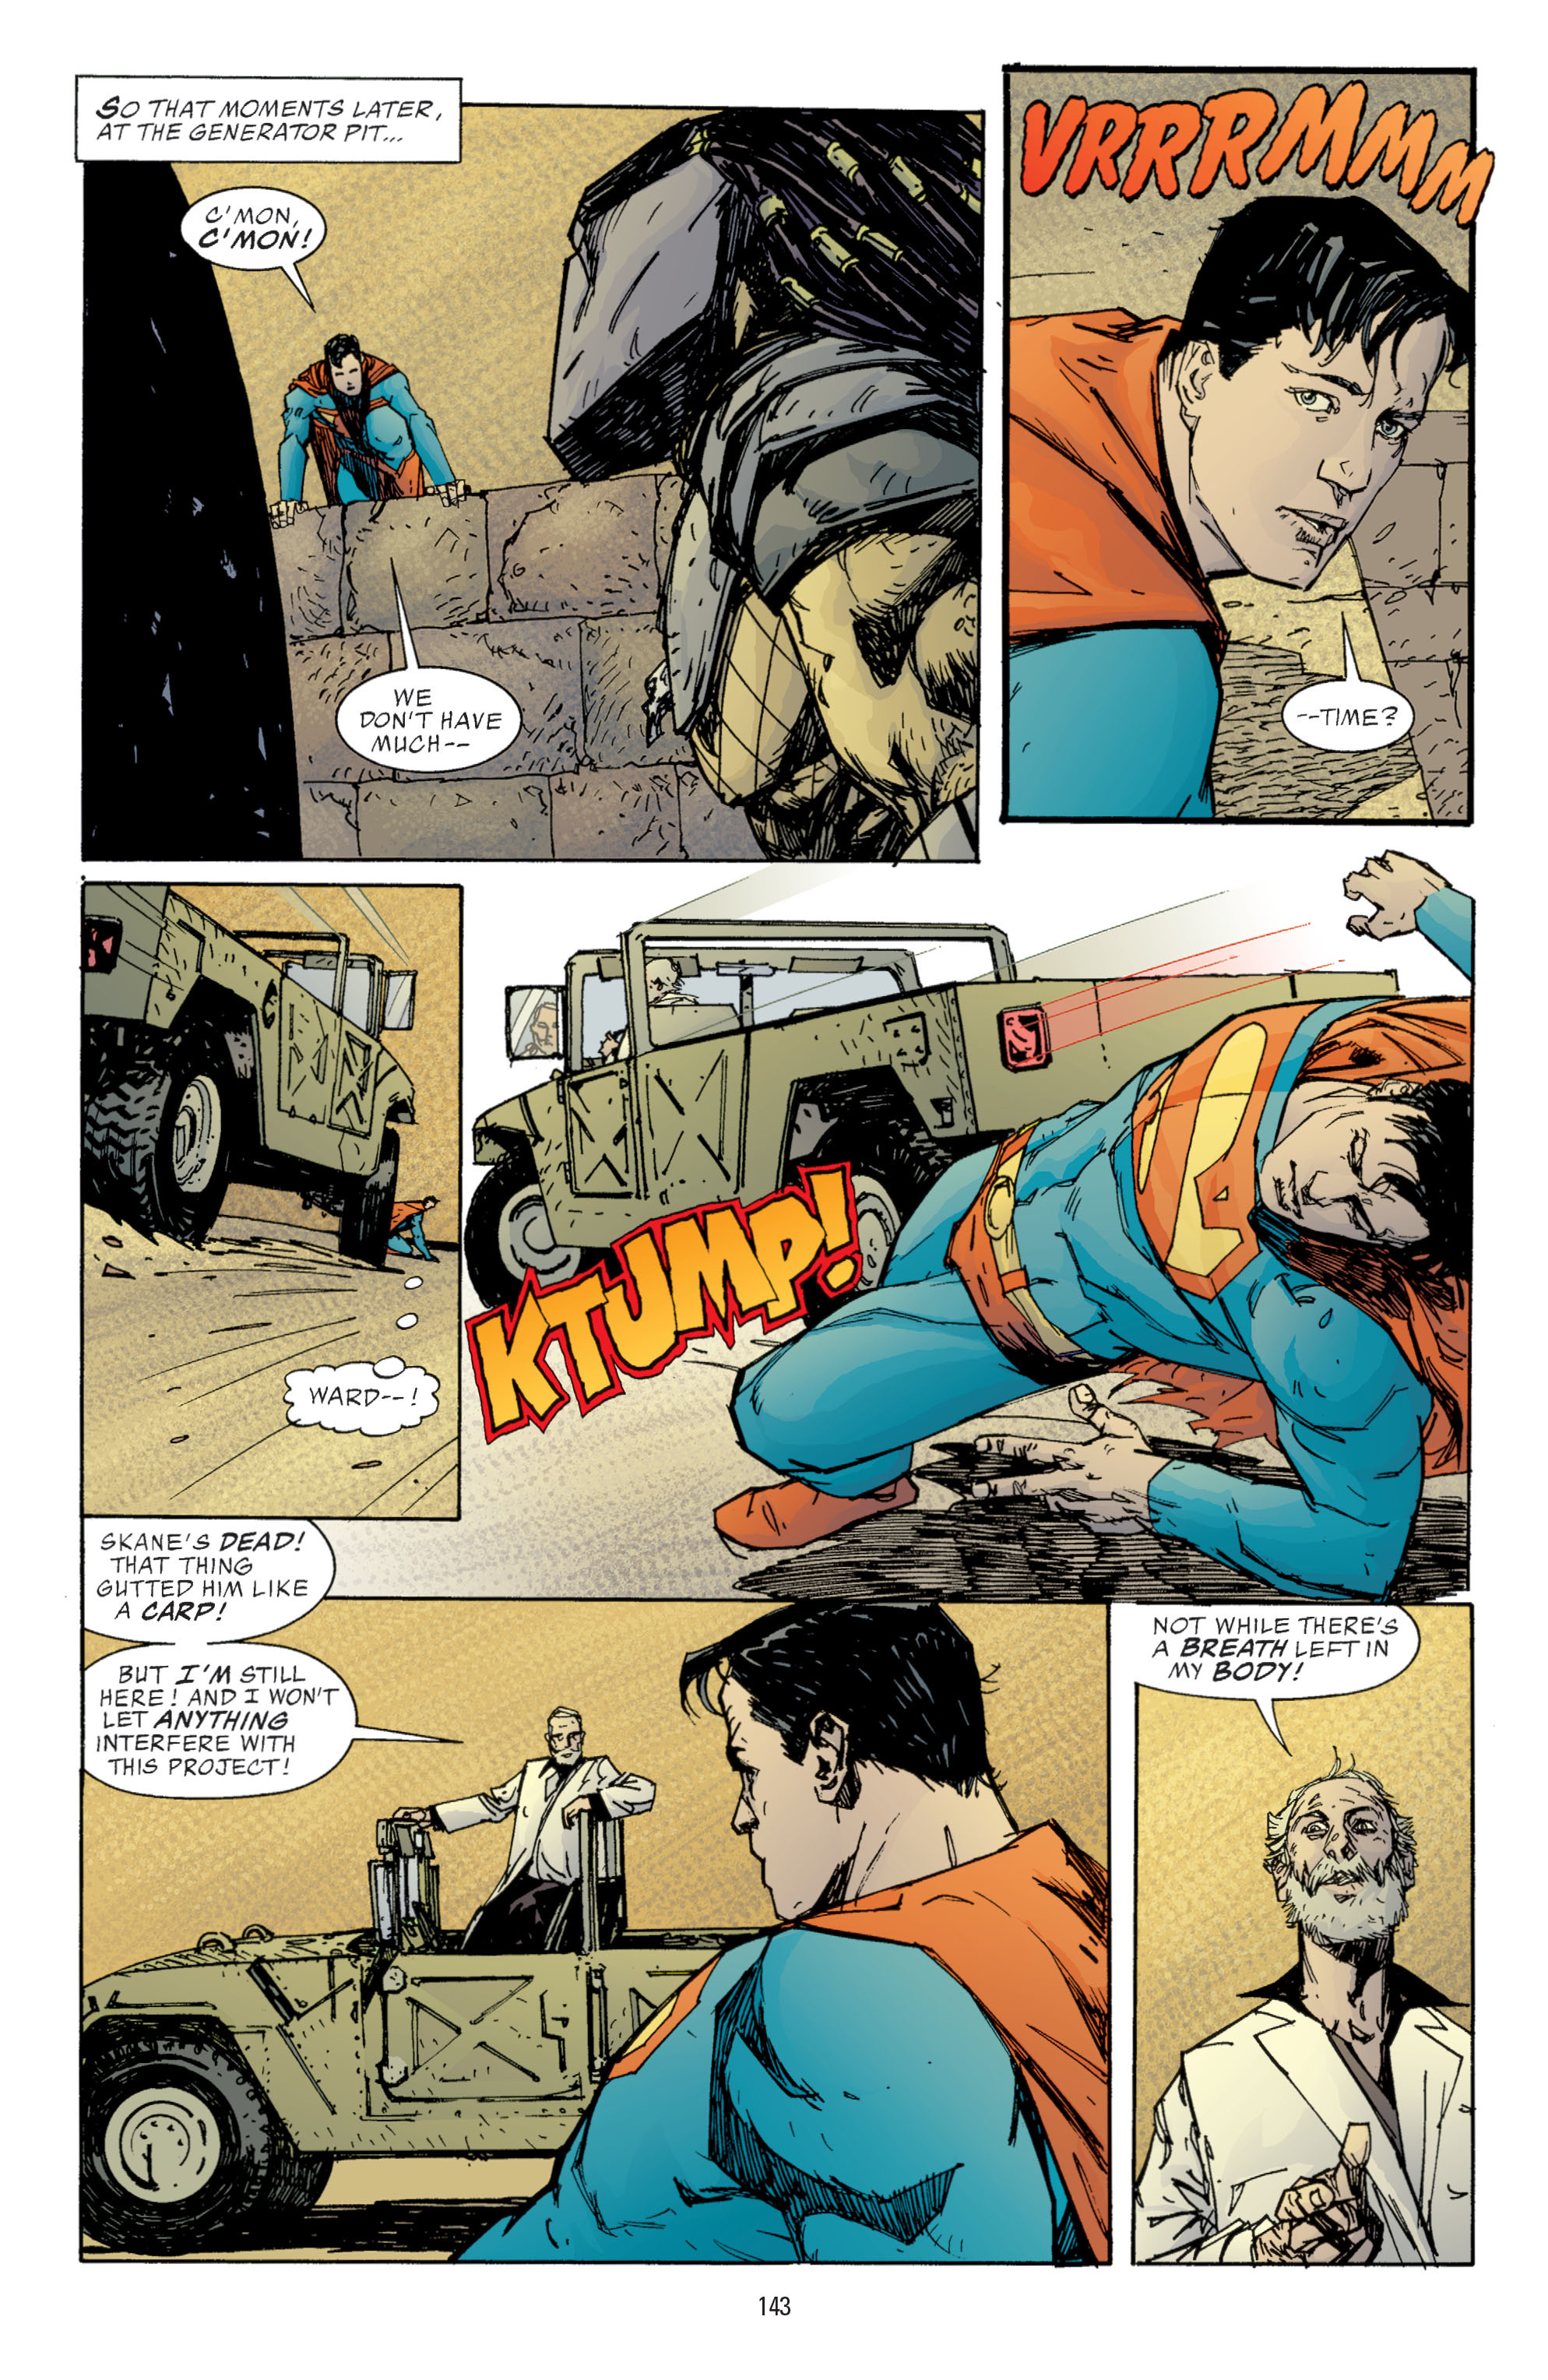 DC Comics/Dark Horse Comics: Justice League Full #1 - English 141